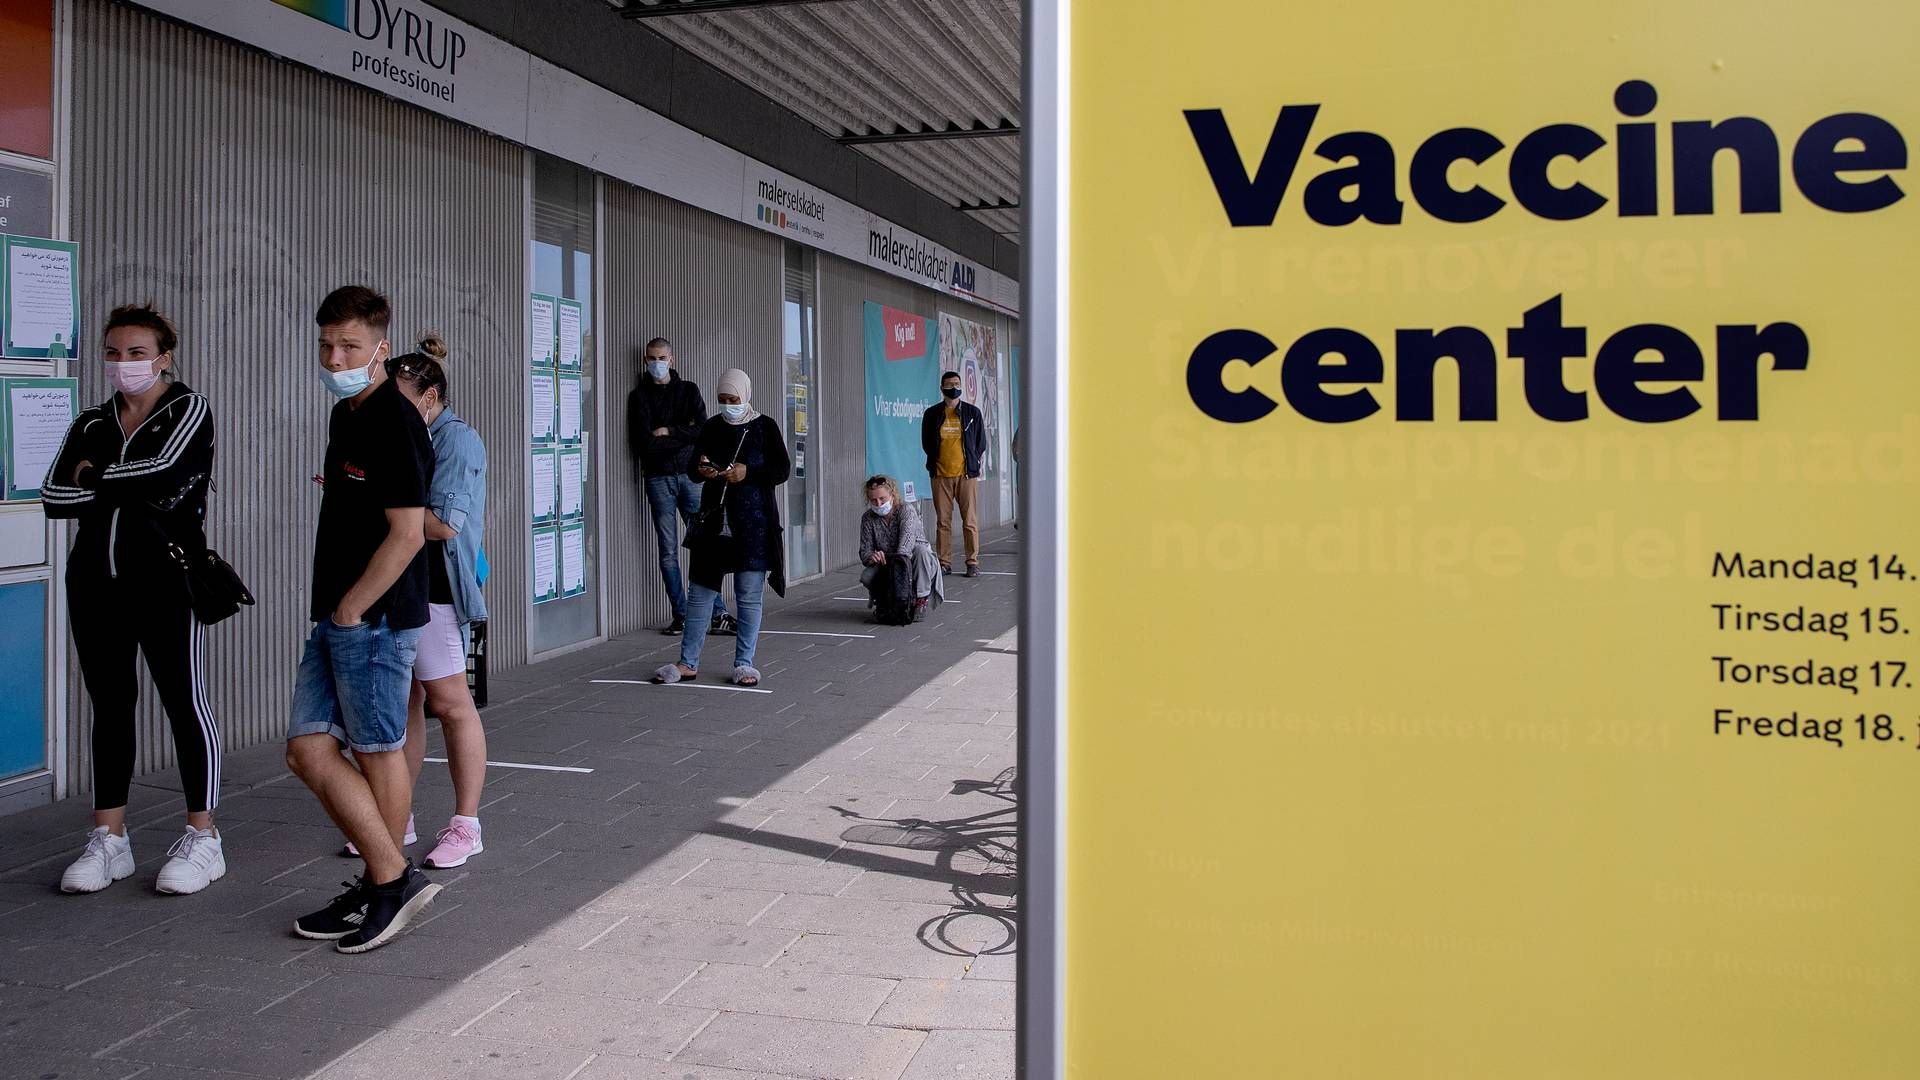 Danskere stod i kø til at blive vaccineret med vacciner mod covid-19 under pandemien. | Foto: Finn Frandsen